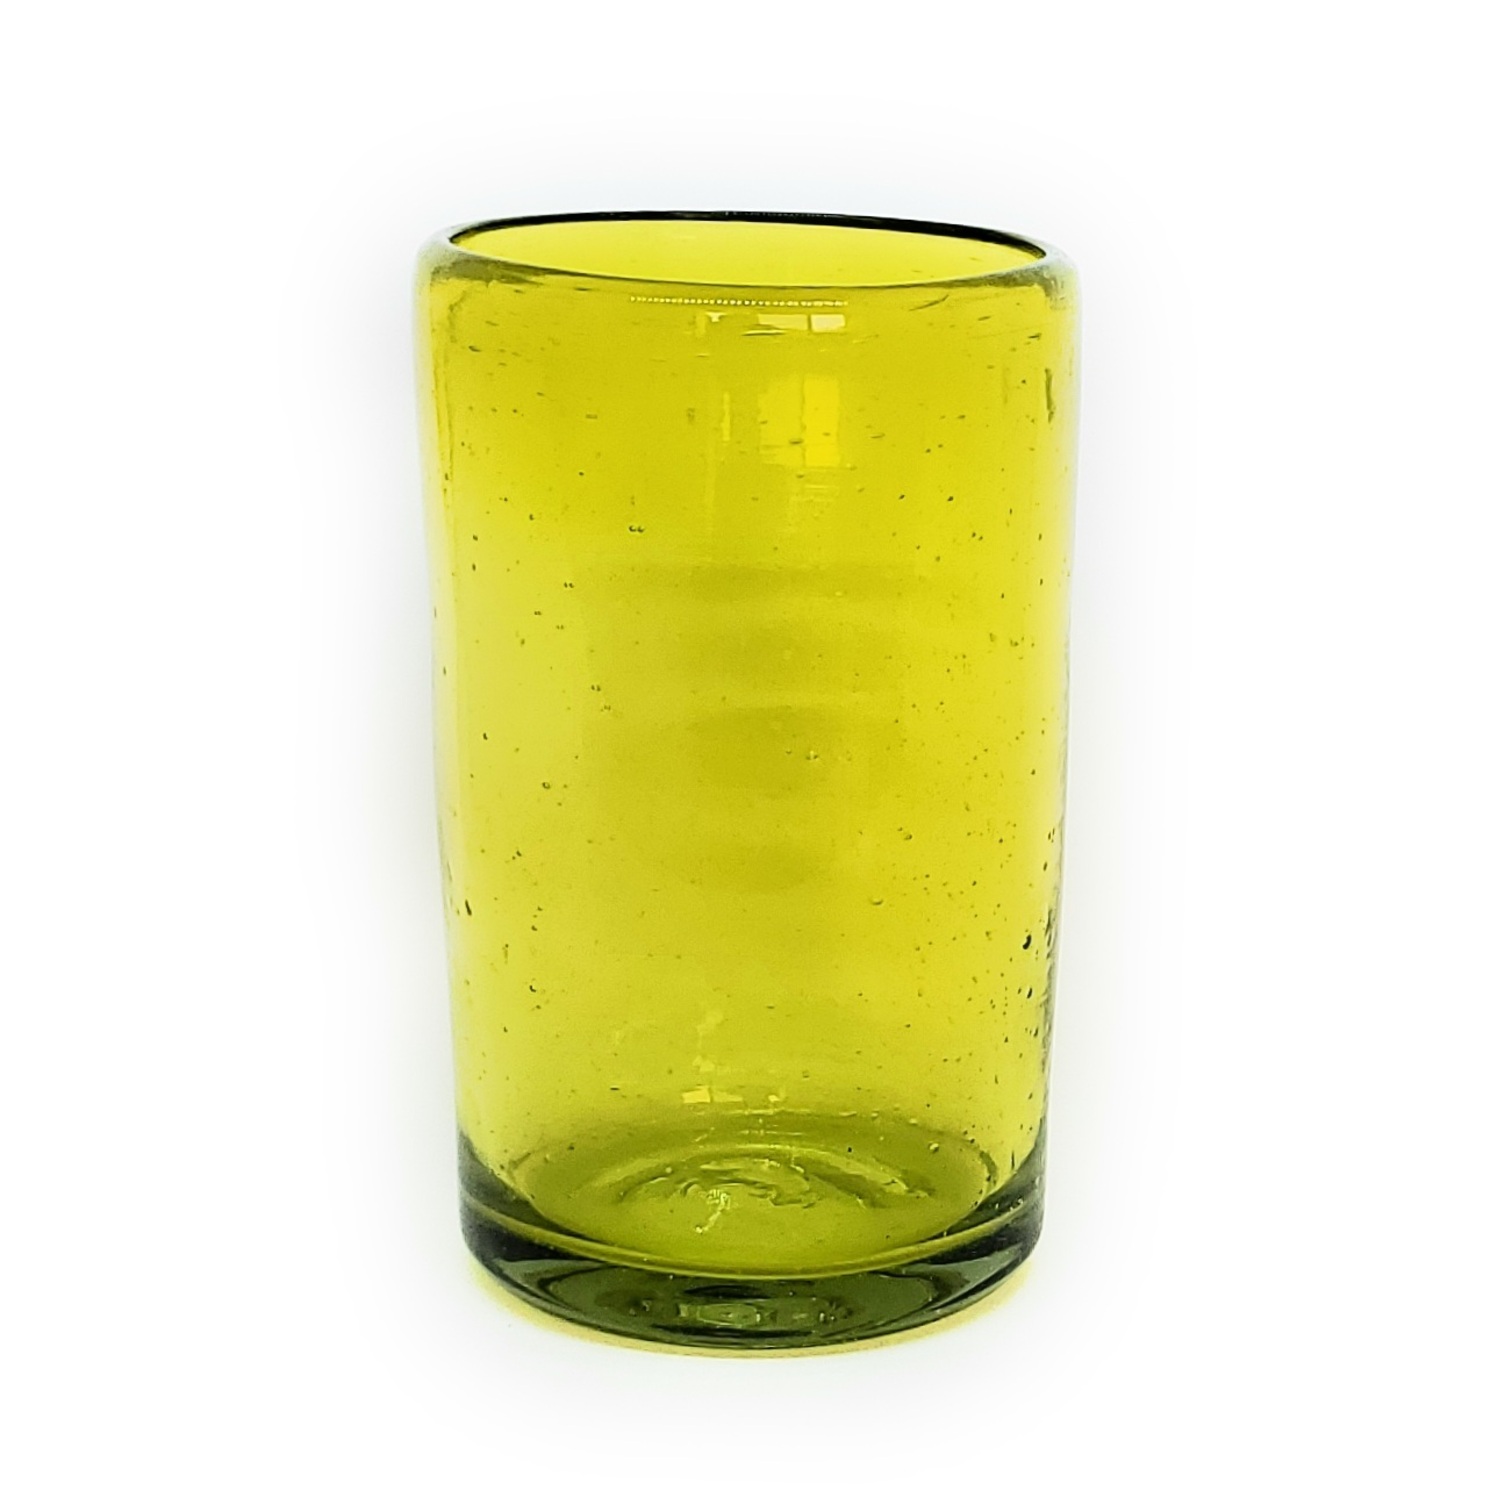 Ofertas / vasos grandes color amarillos / �stos artesanales vasos le dar�n un toque cl�sico a su bebida favorita.